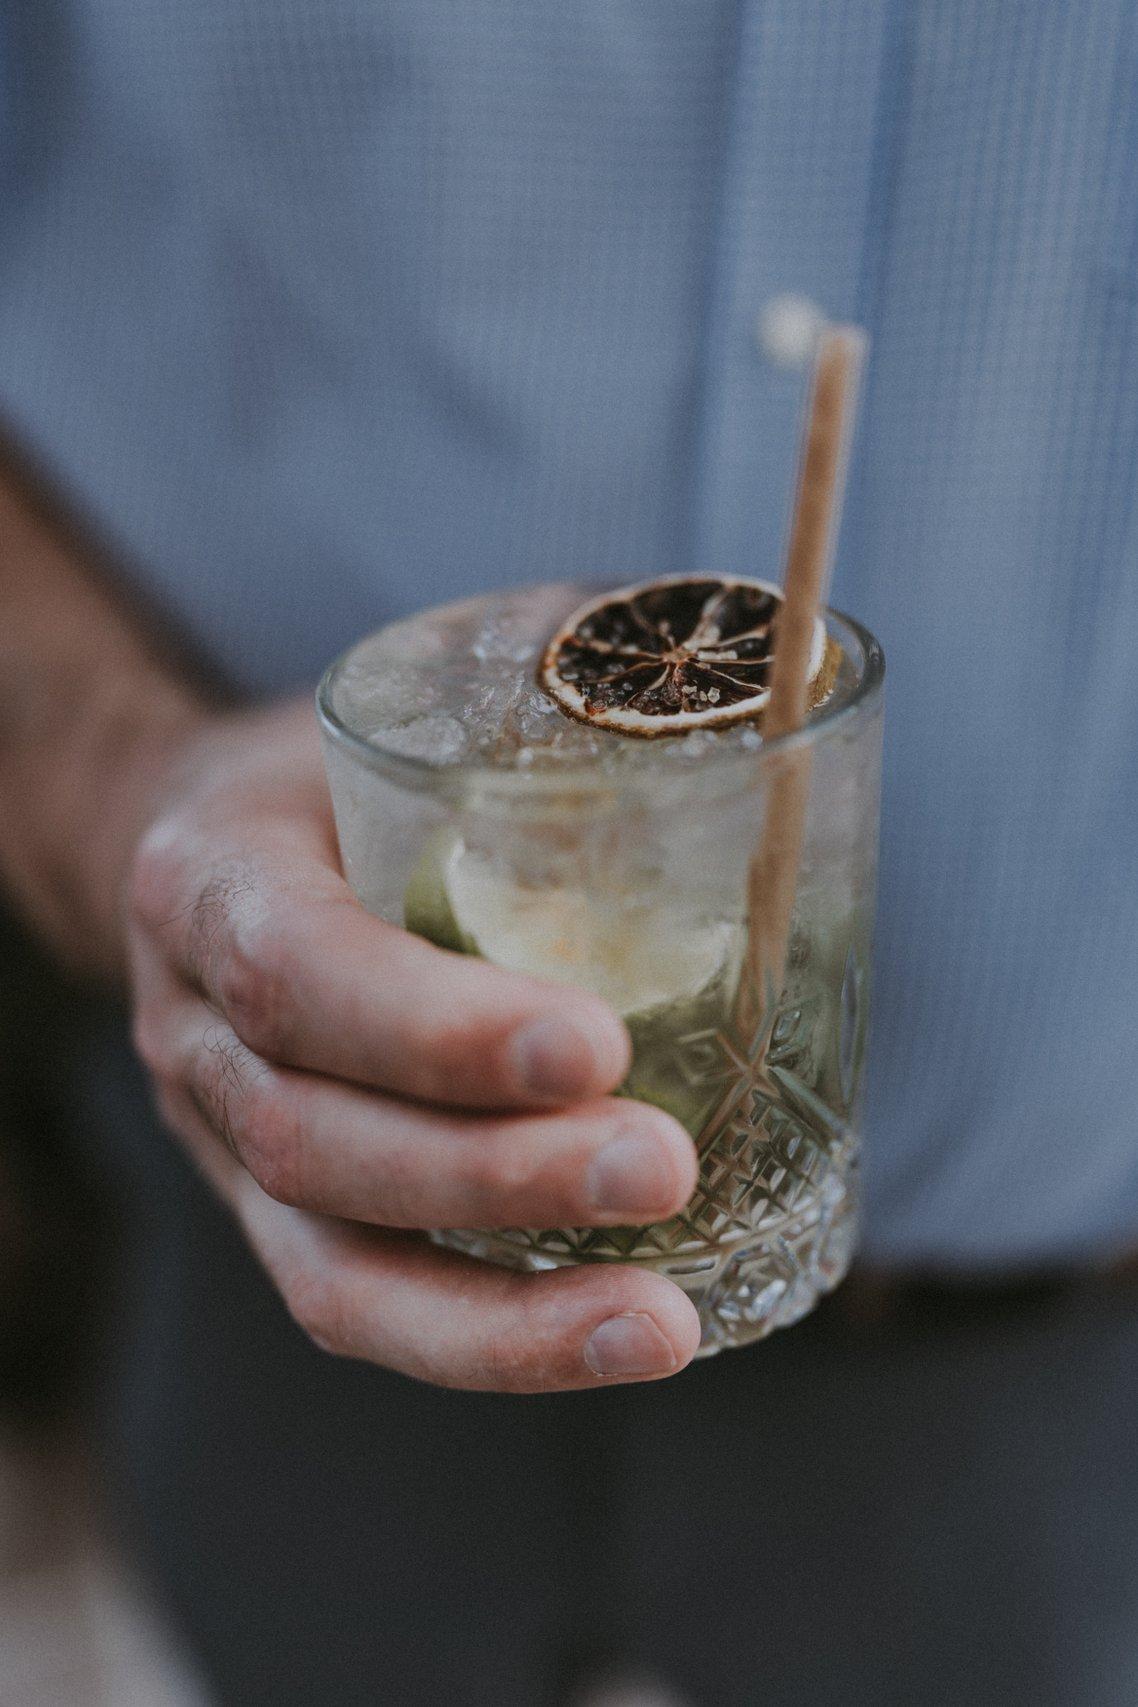 Les 10 cocktails d'été les plus populaires sur notre site